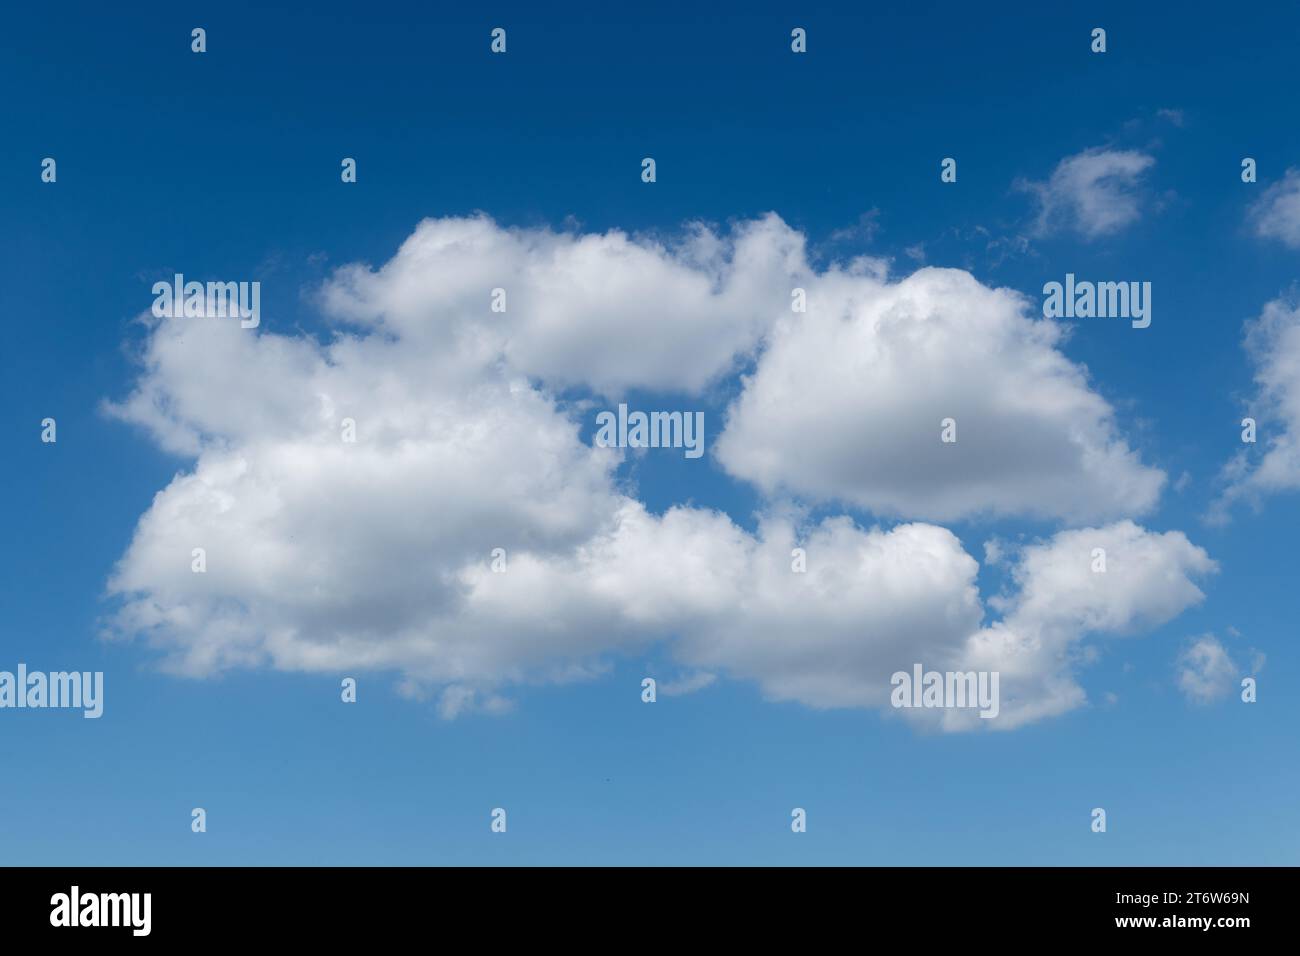 Dettaglio di una formazione di nuvole cumulus bianca, piumino, in cotone, sullo sfondo di un cielo azzurro e luminoso durante le giornate più belle. Foto Stock